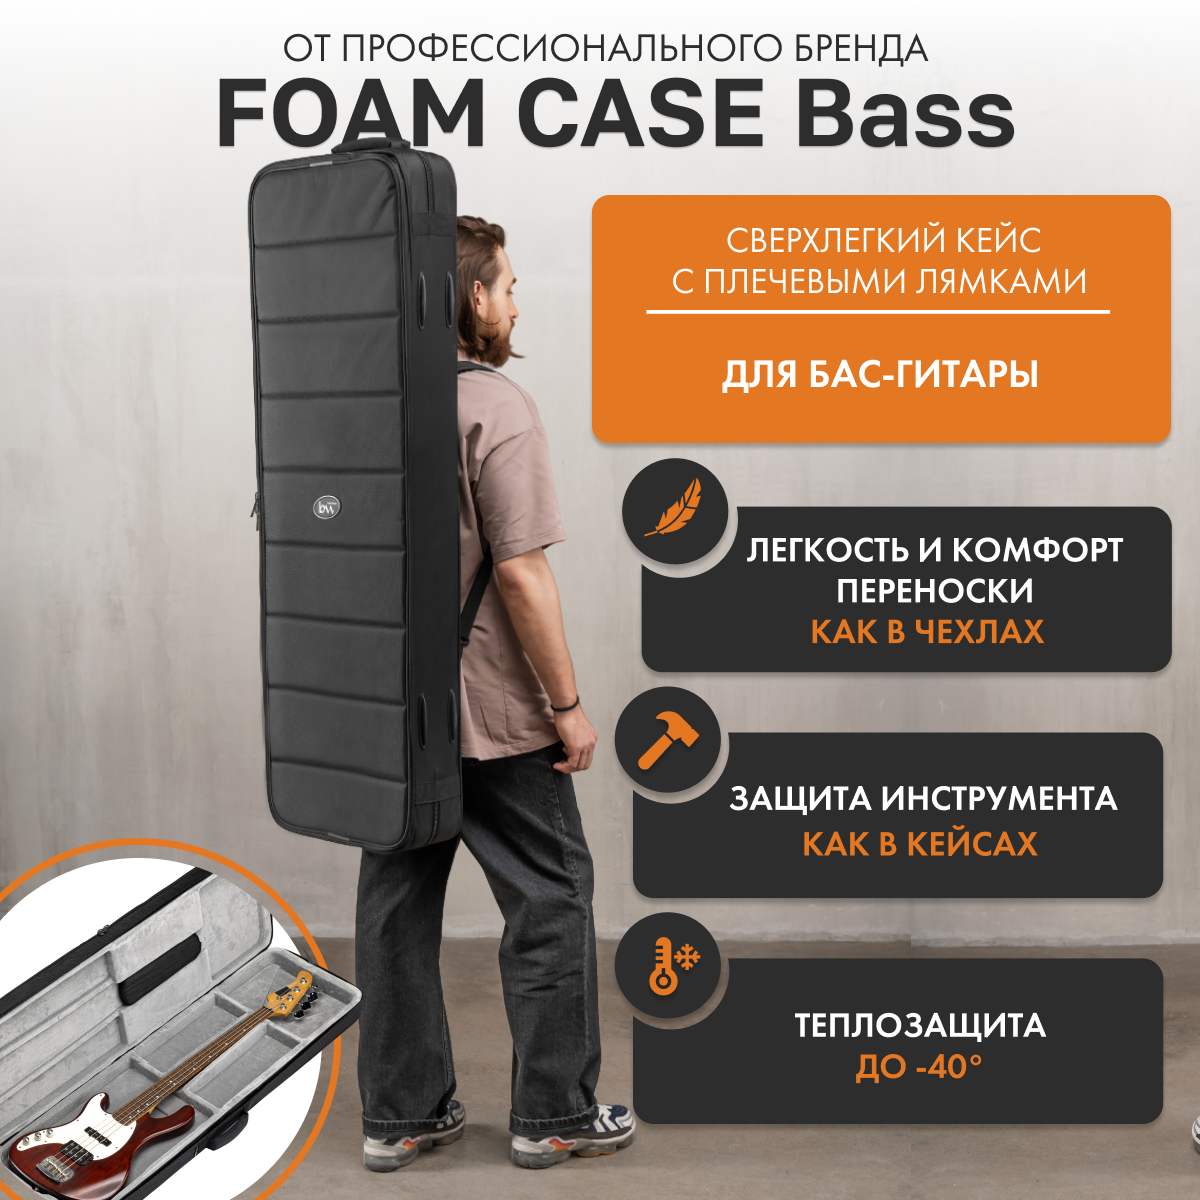 Сверхлёгкий кейс для бас-гитары Bass Foam Case